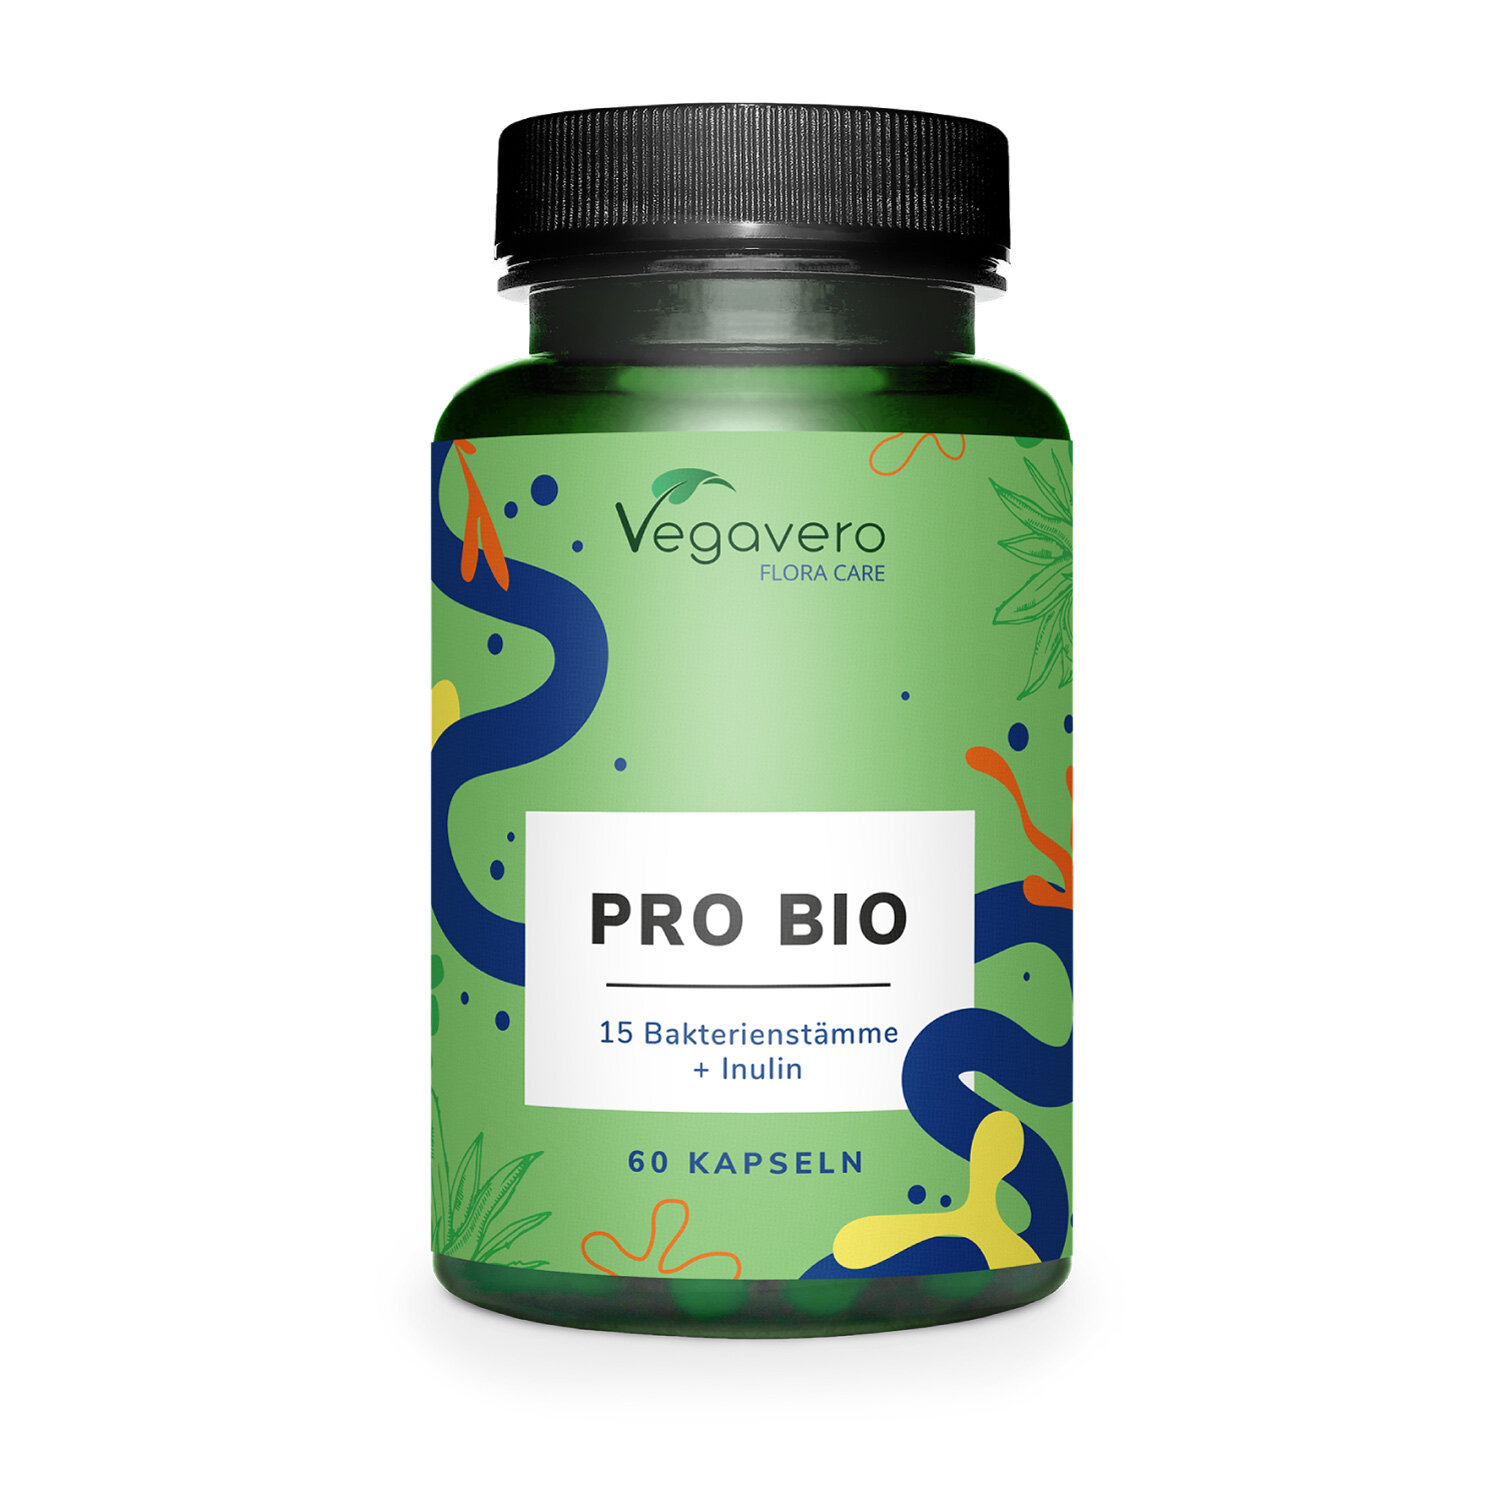 Vegavero Pro Bio Kulturenkomplex | 15 Bakterienstämme + Inulin | 60 Kapseln